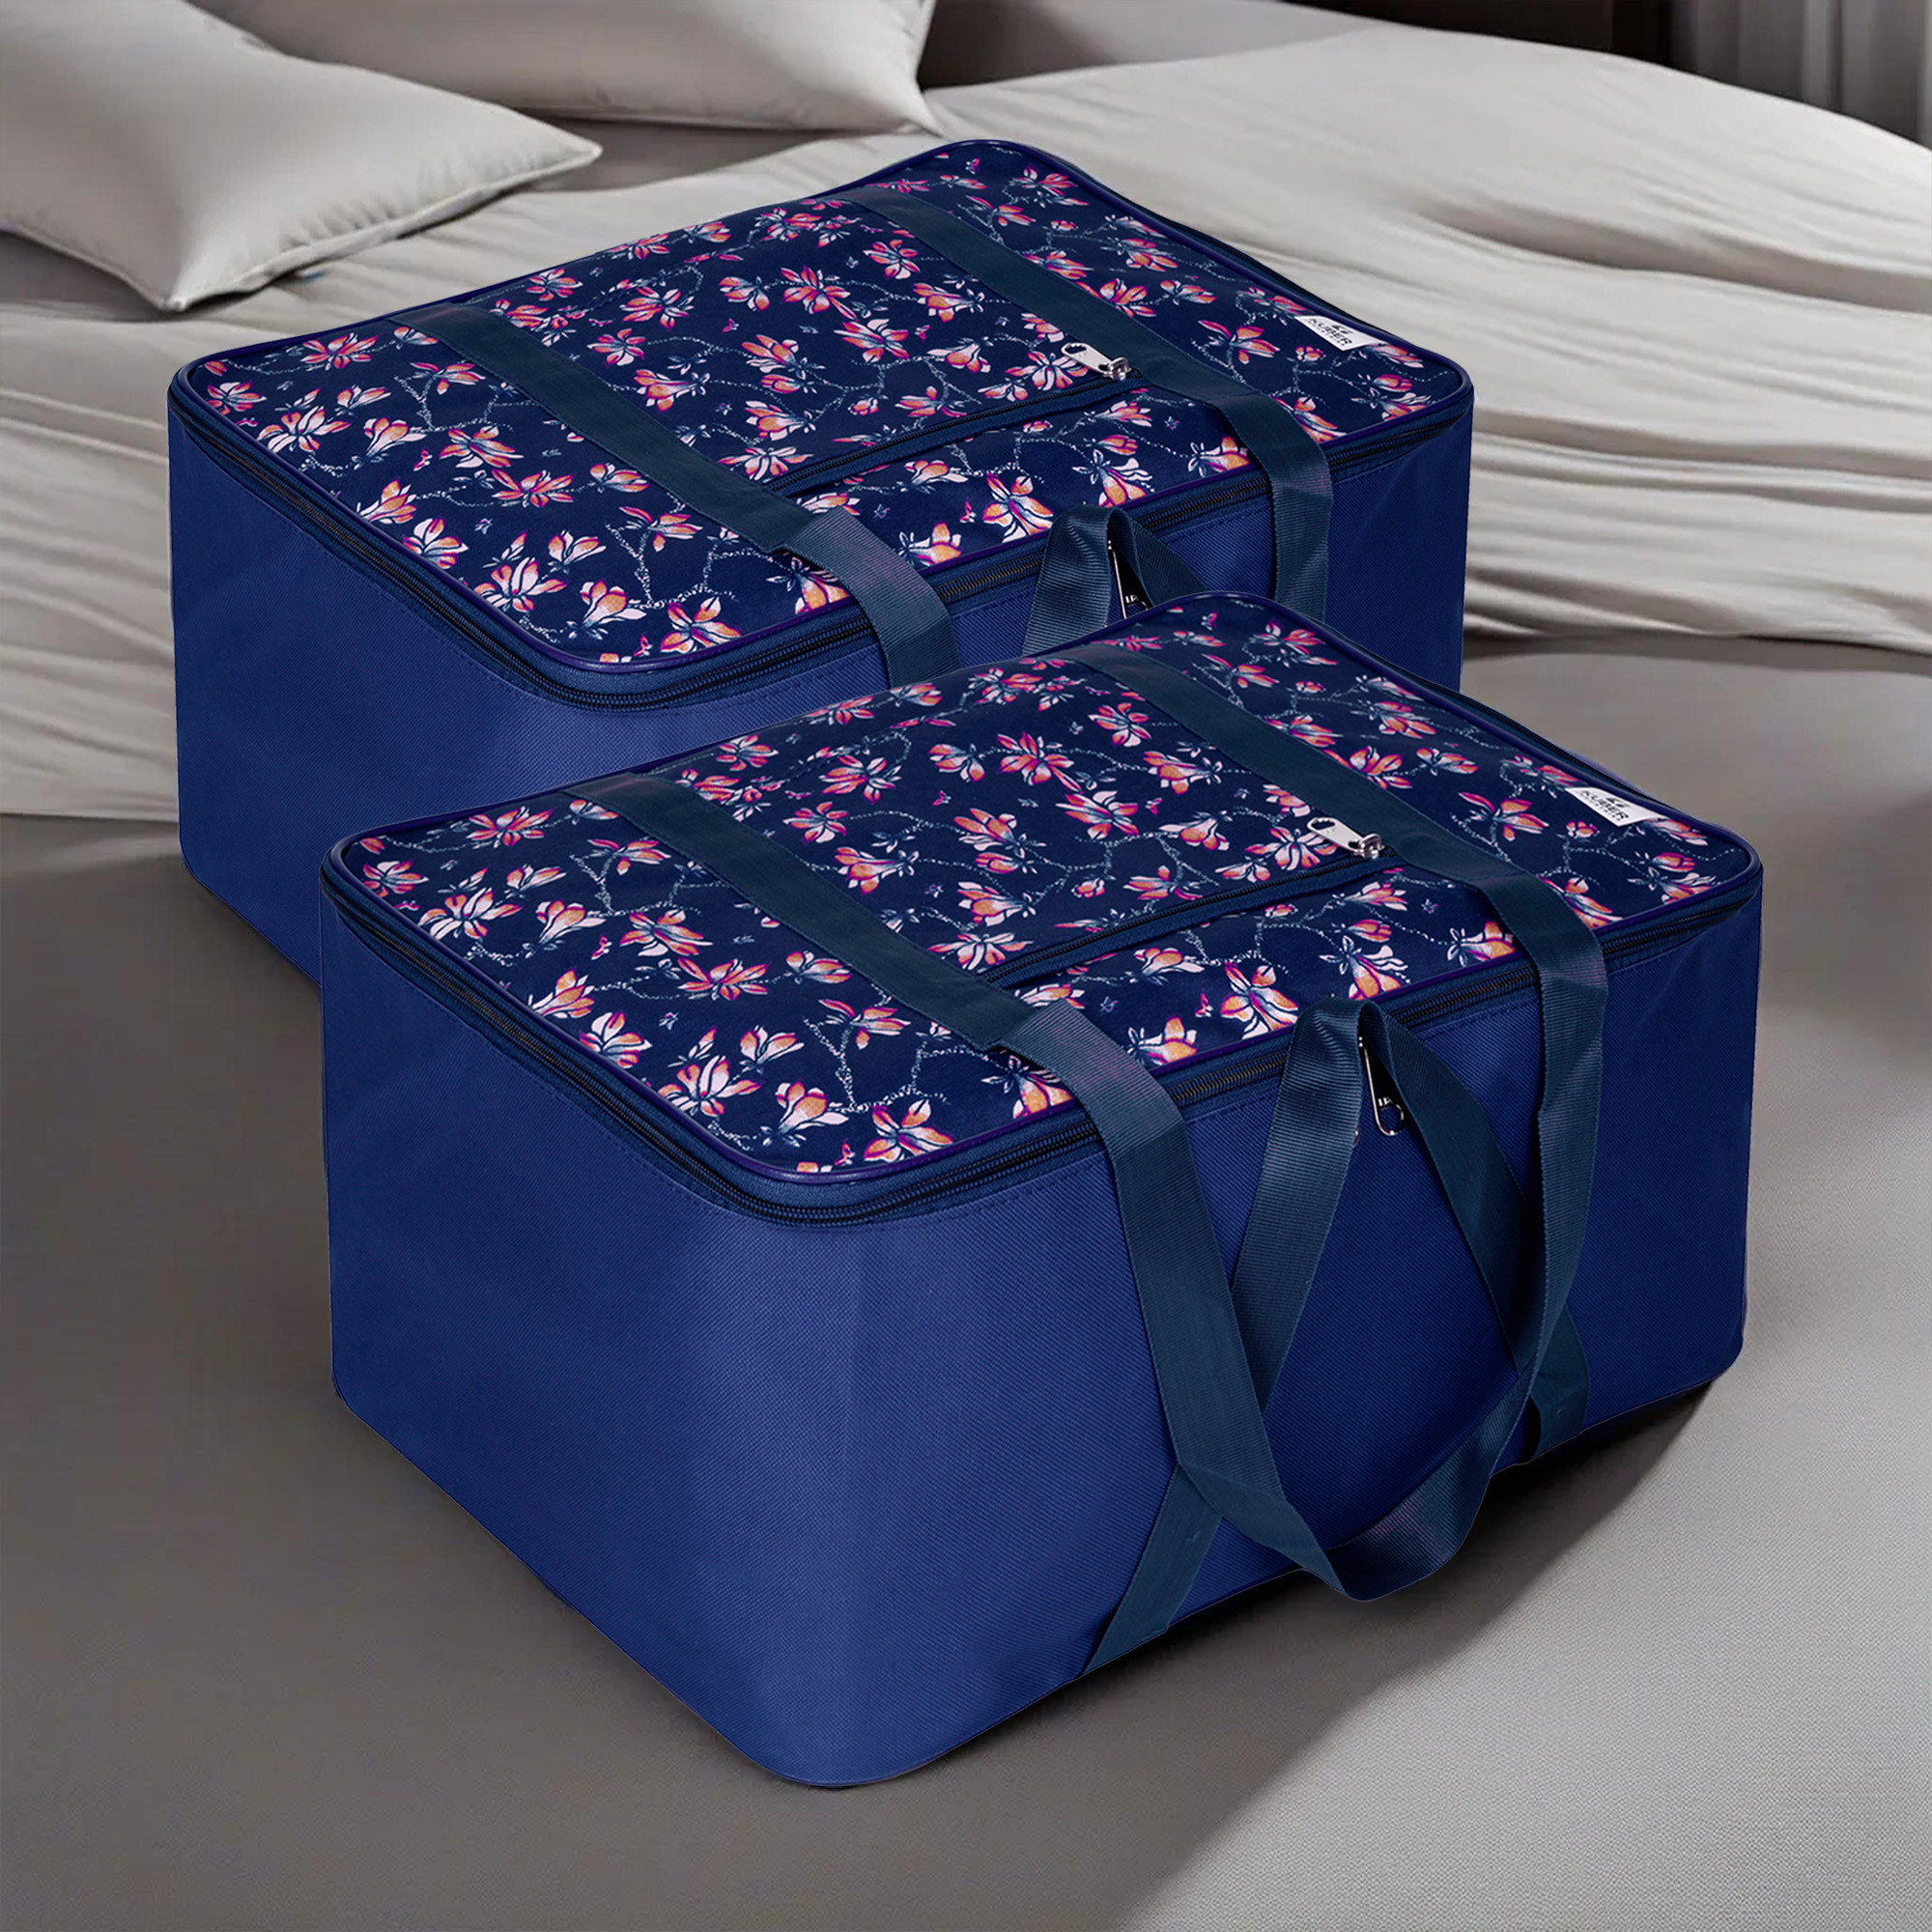 Kuber Industries Storage Bag | Clothes Storage Attachi Bag | Underbed Storage Bag | Zipper Storage Bag | Wardrobe Organizer with Handle | Travel Attachi Bag | Flower-Print | Small | Navy Blue